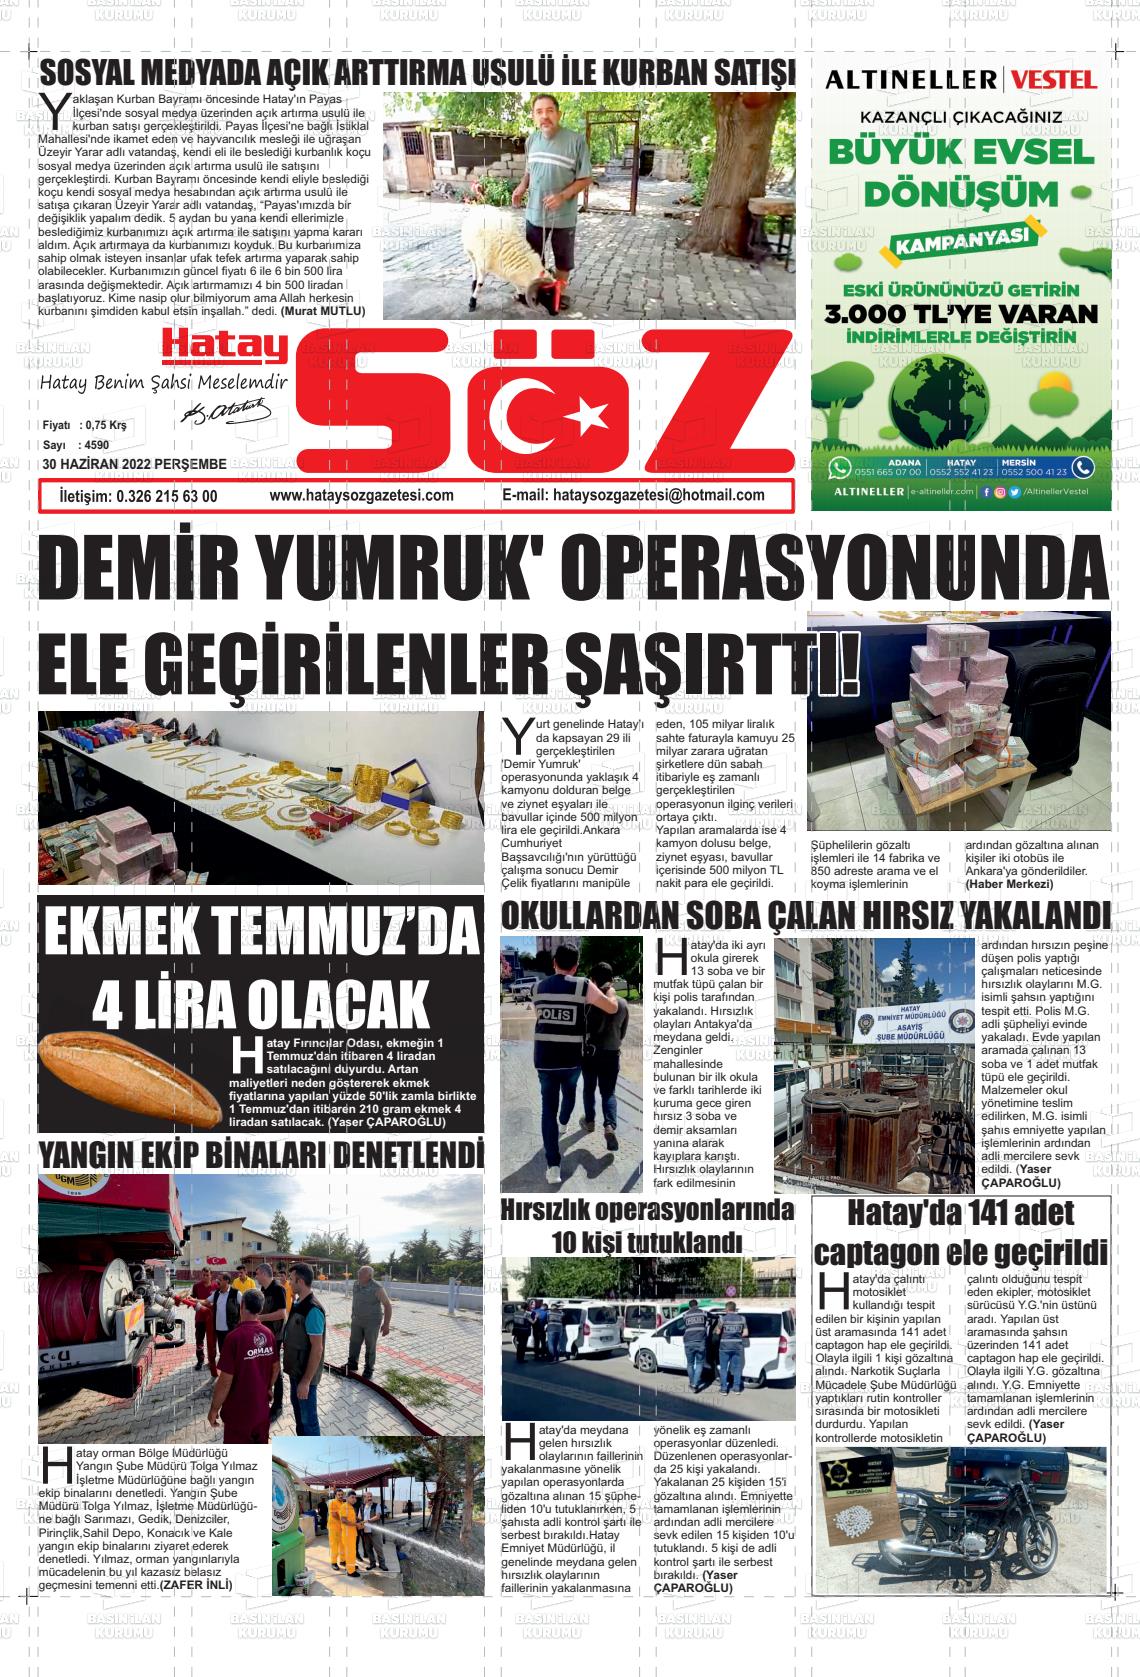 02 Temmuz 2022 Hatay Söz Gazete Manşeti